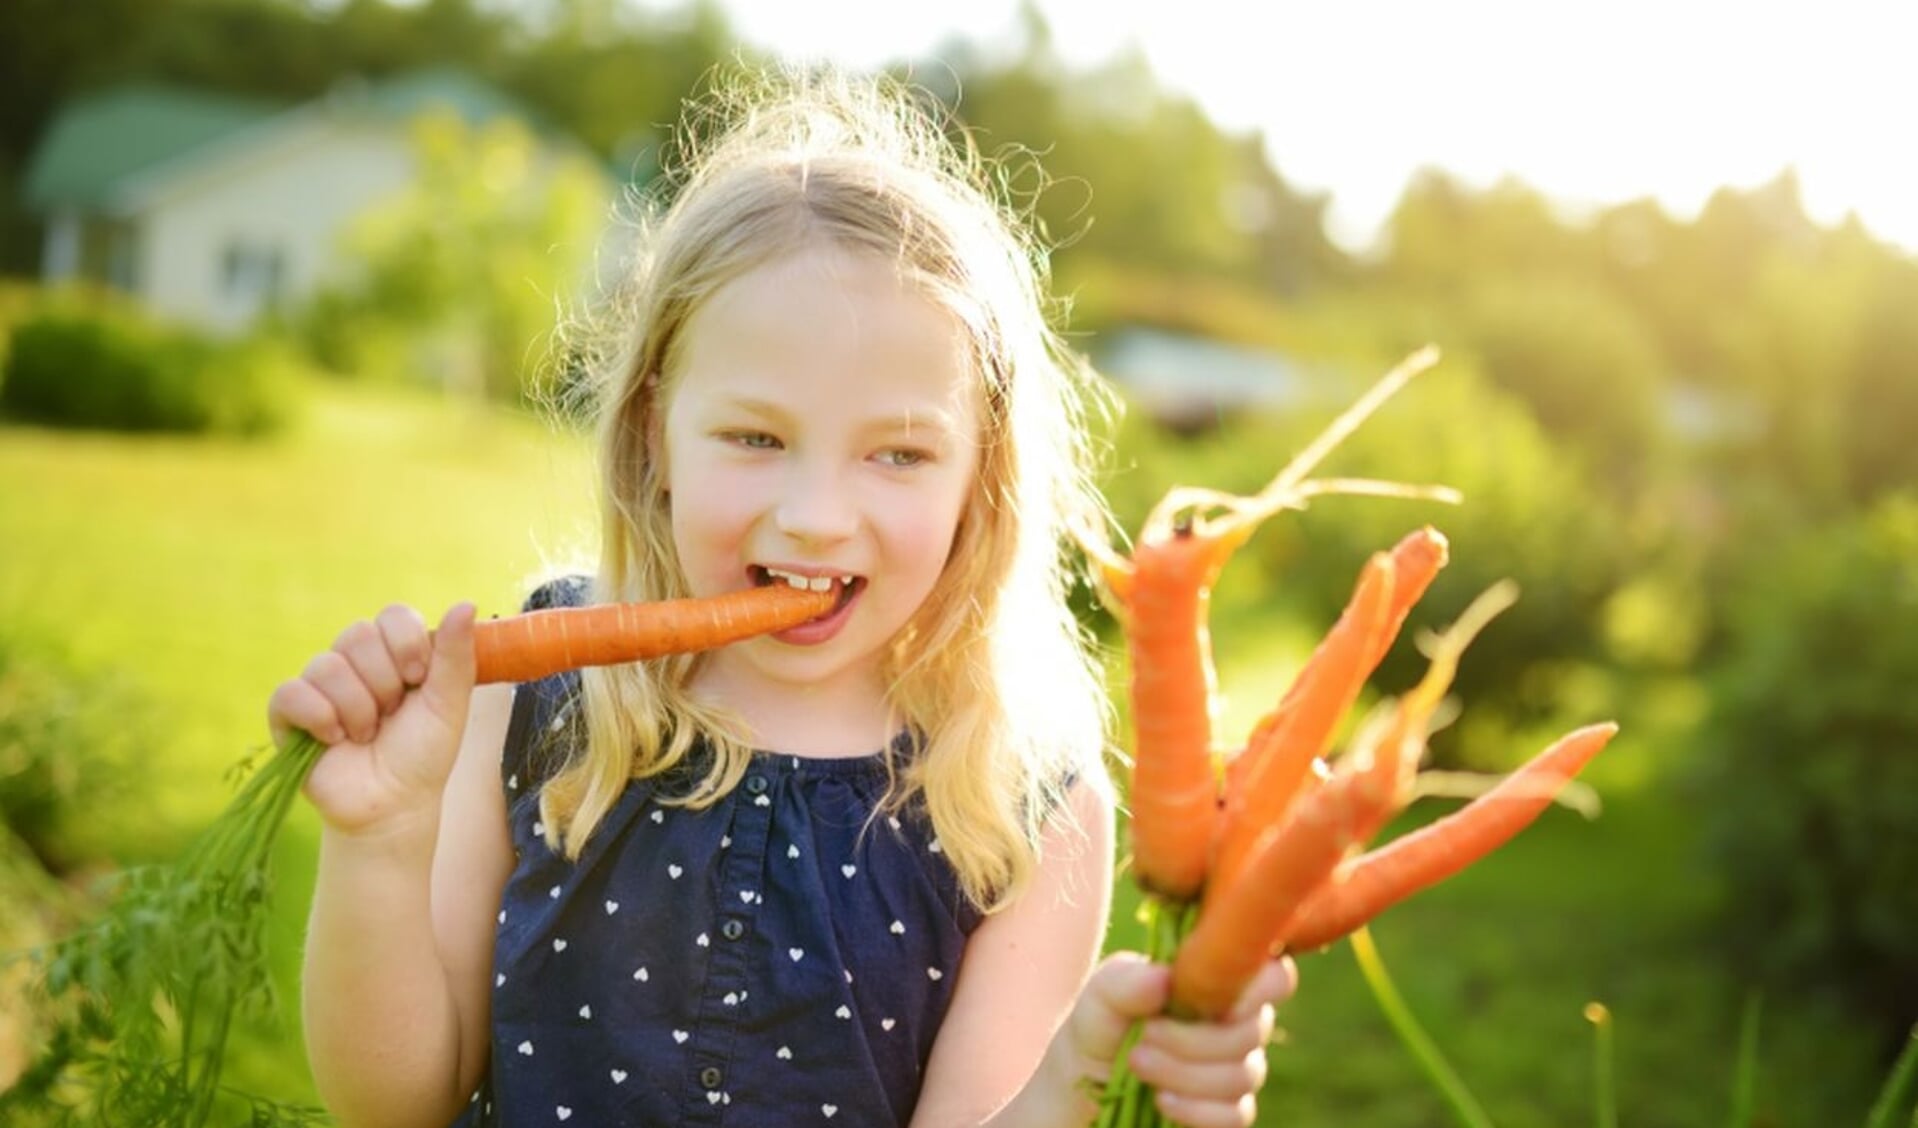 De organisatie achter de Week van de Schooltuin wil kinderen bewuster maken van hoe groenten groeien. 